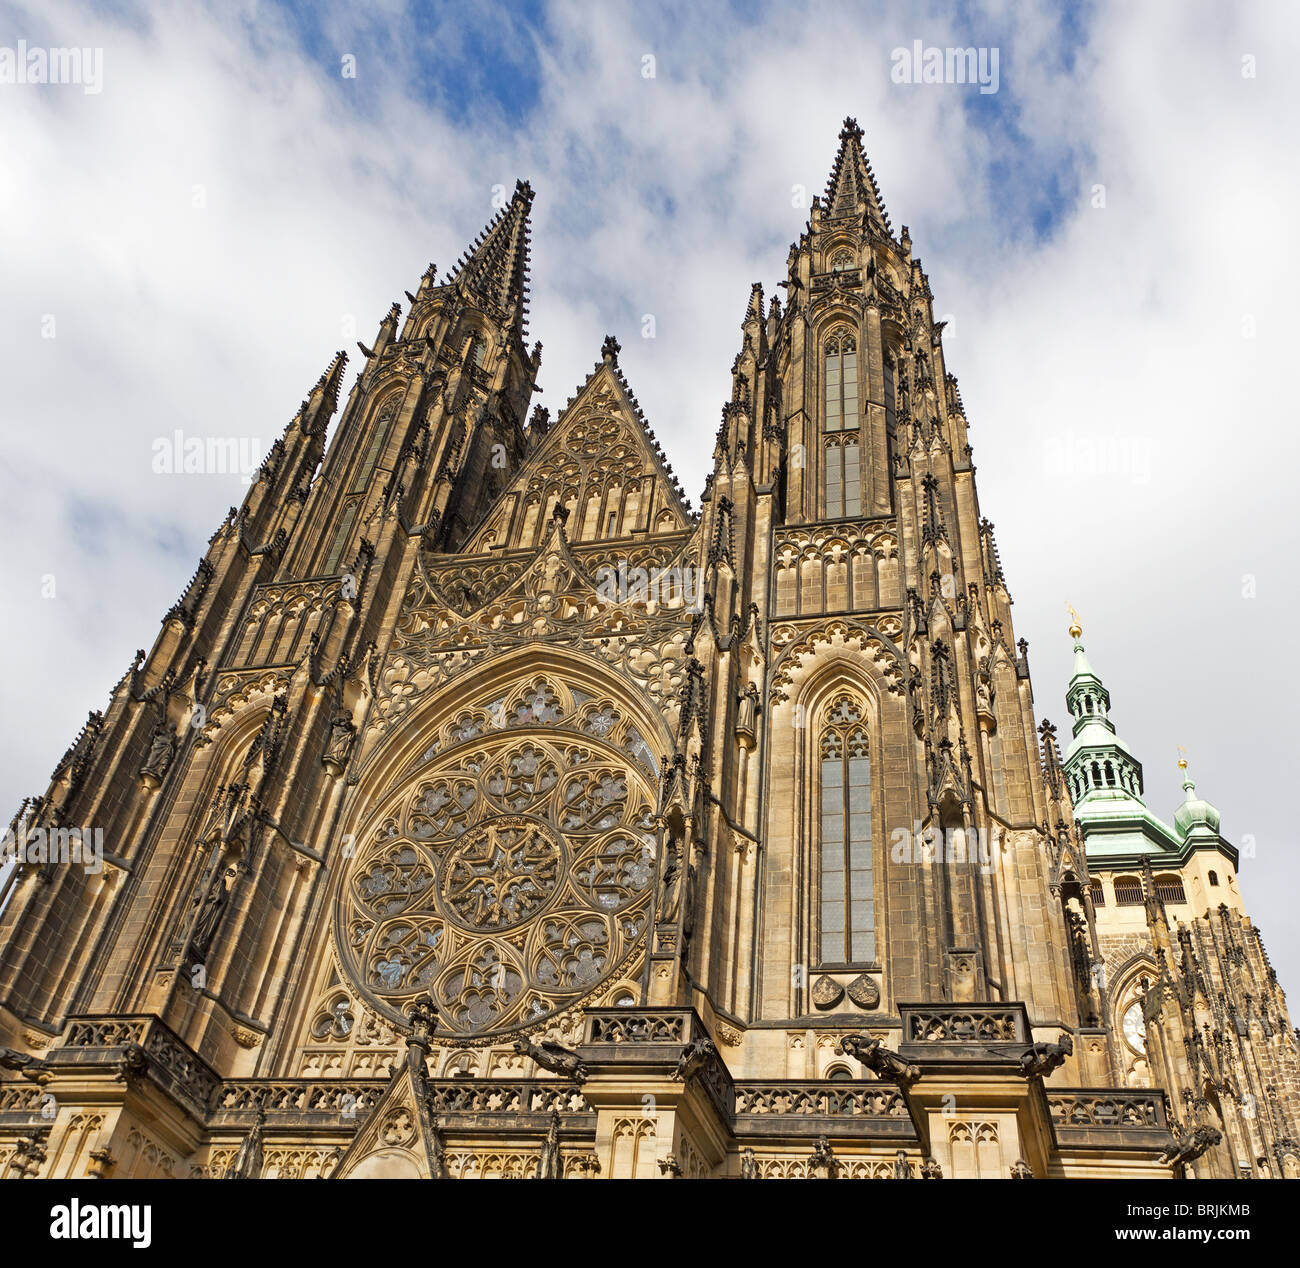 St. Vitus Cathedral at Prague Castle, Czech Republic Stock Photo